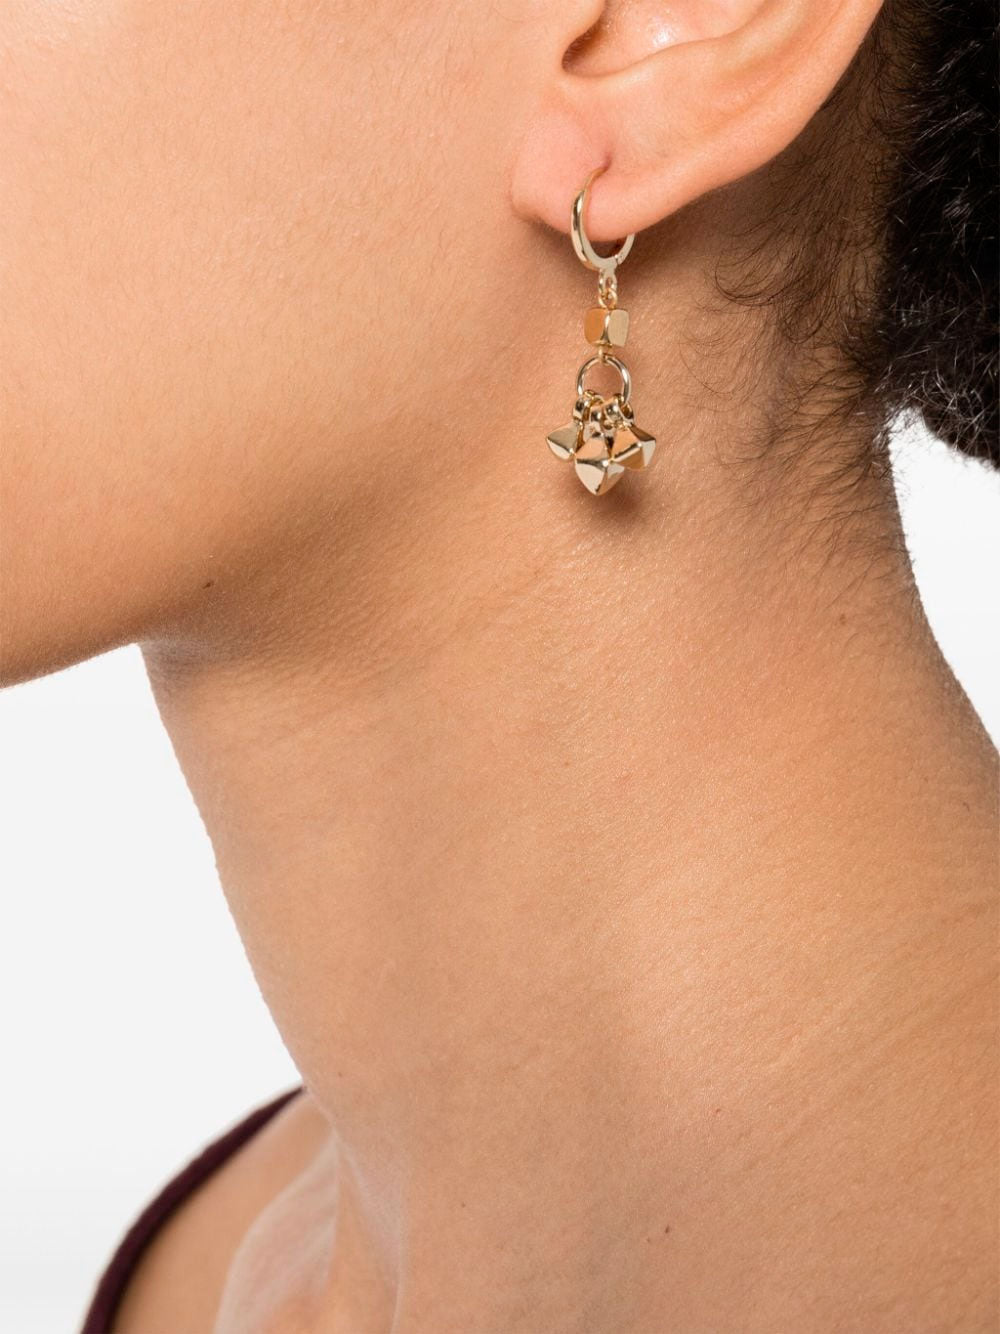 Pendant dangle earrings